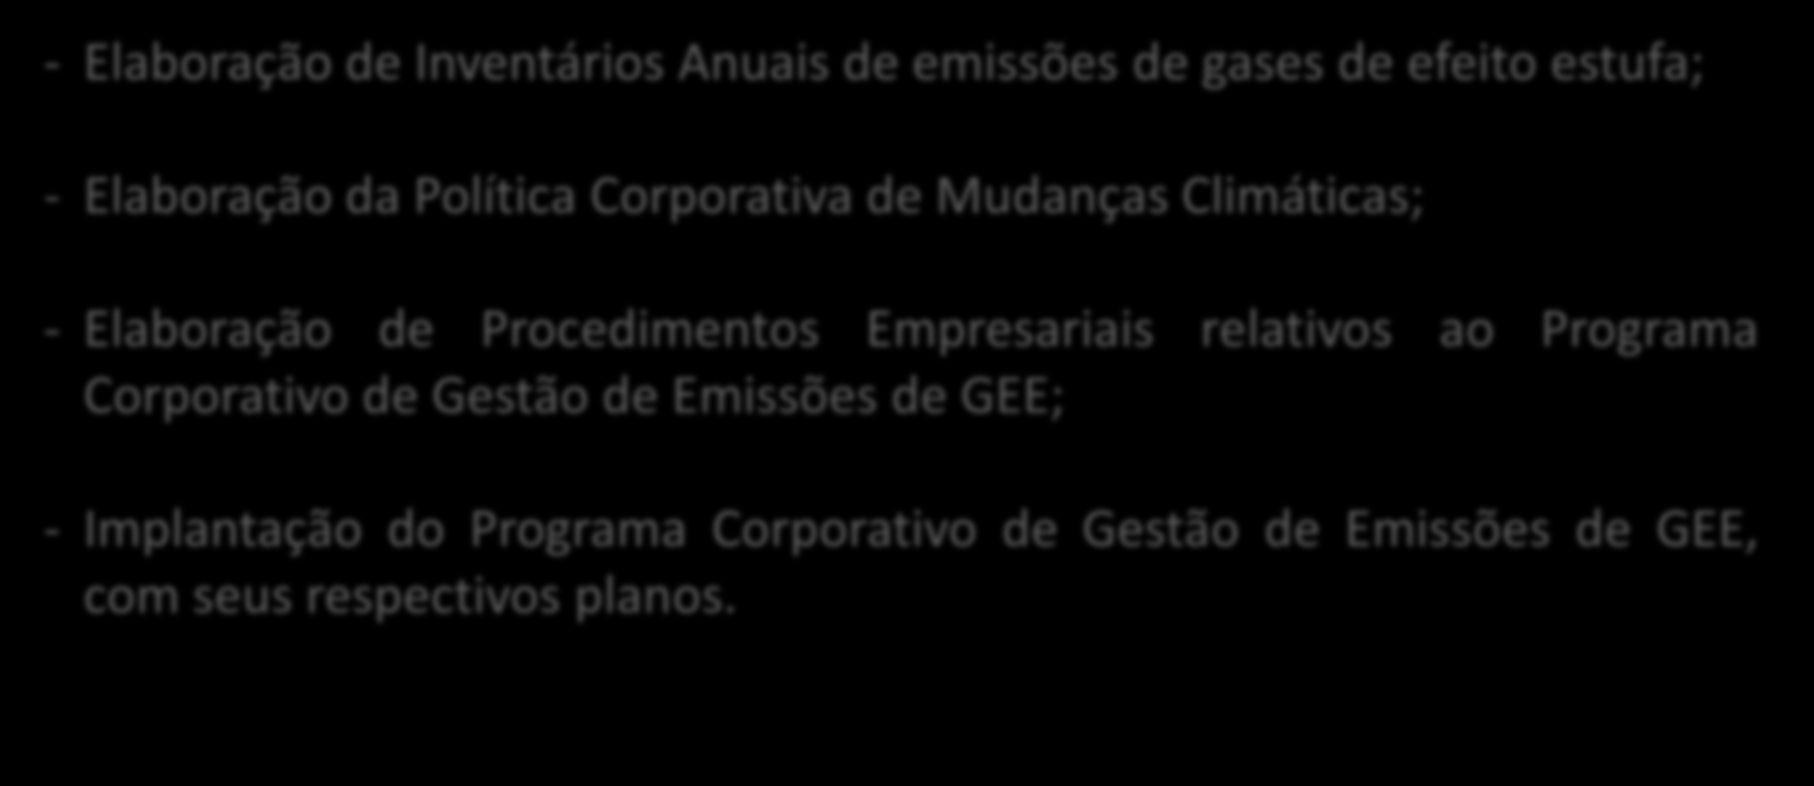 Próximos Passos - Elaboração de Inventários Anuais de emissões de gases de efeito estufa; - Elaboração da Política Corporativa de Mudanças Climáticas; - Elaboração de